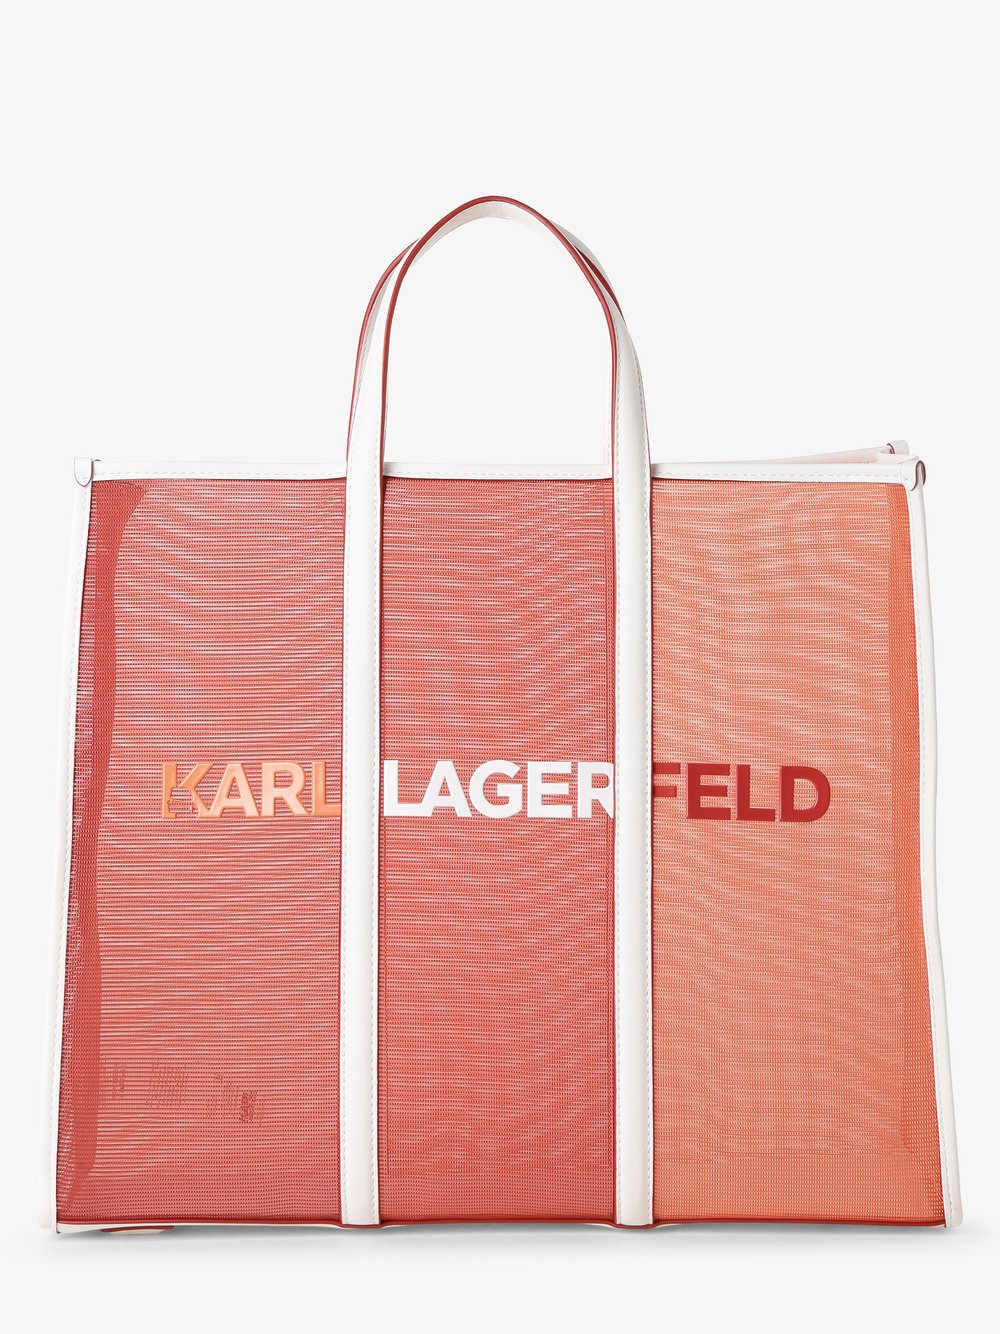 KARL LAGERFELD - Damska torba shopper, pomarańczowy